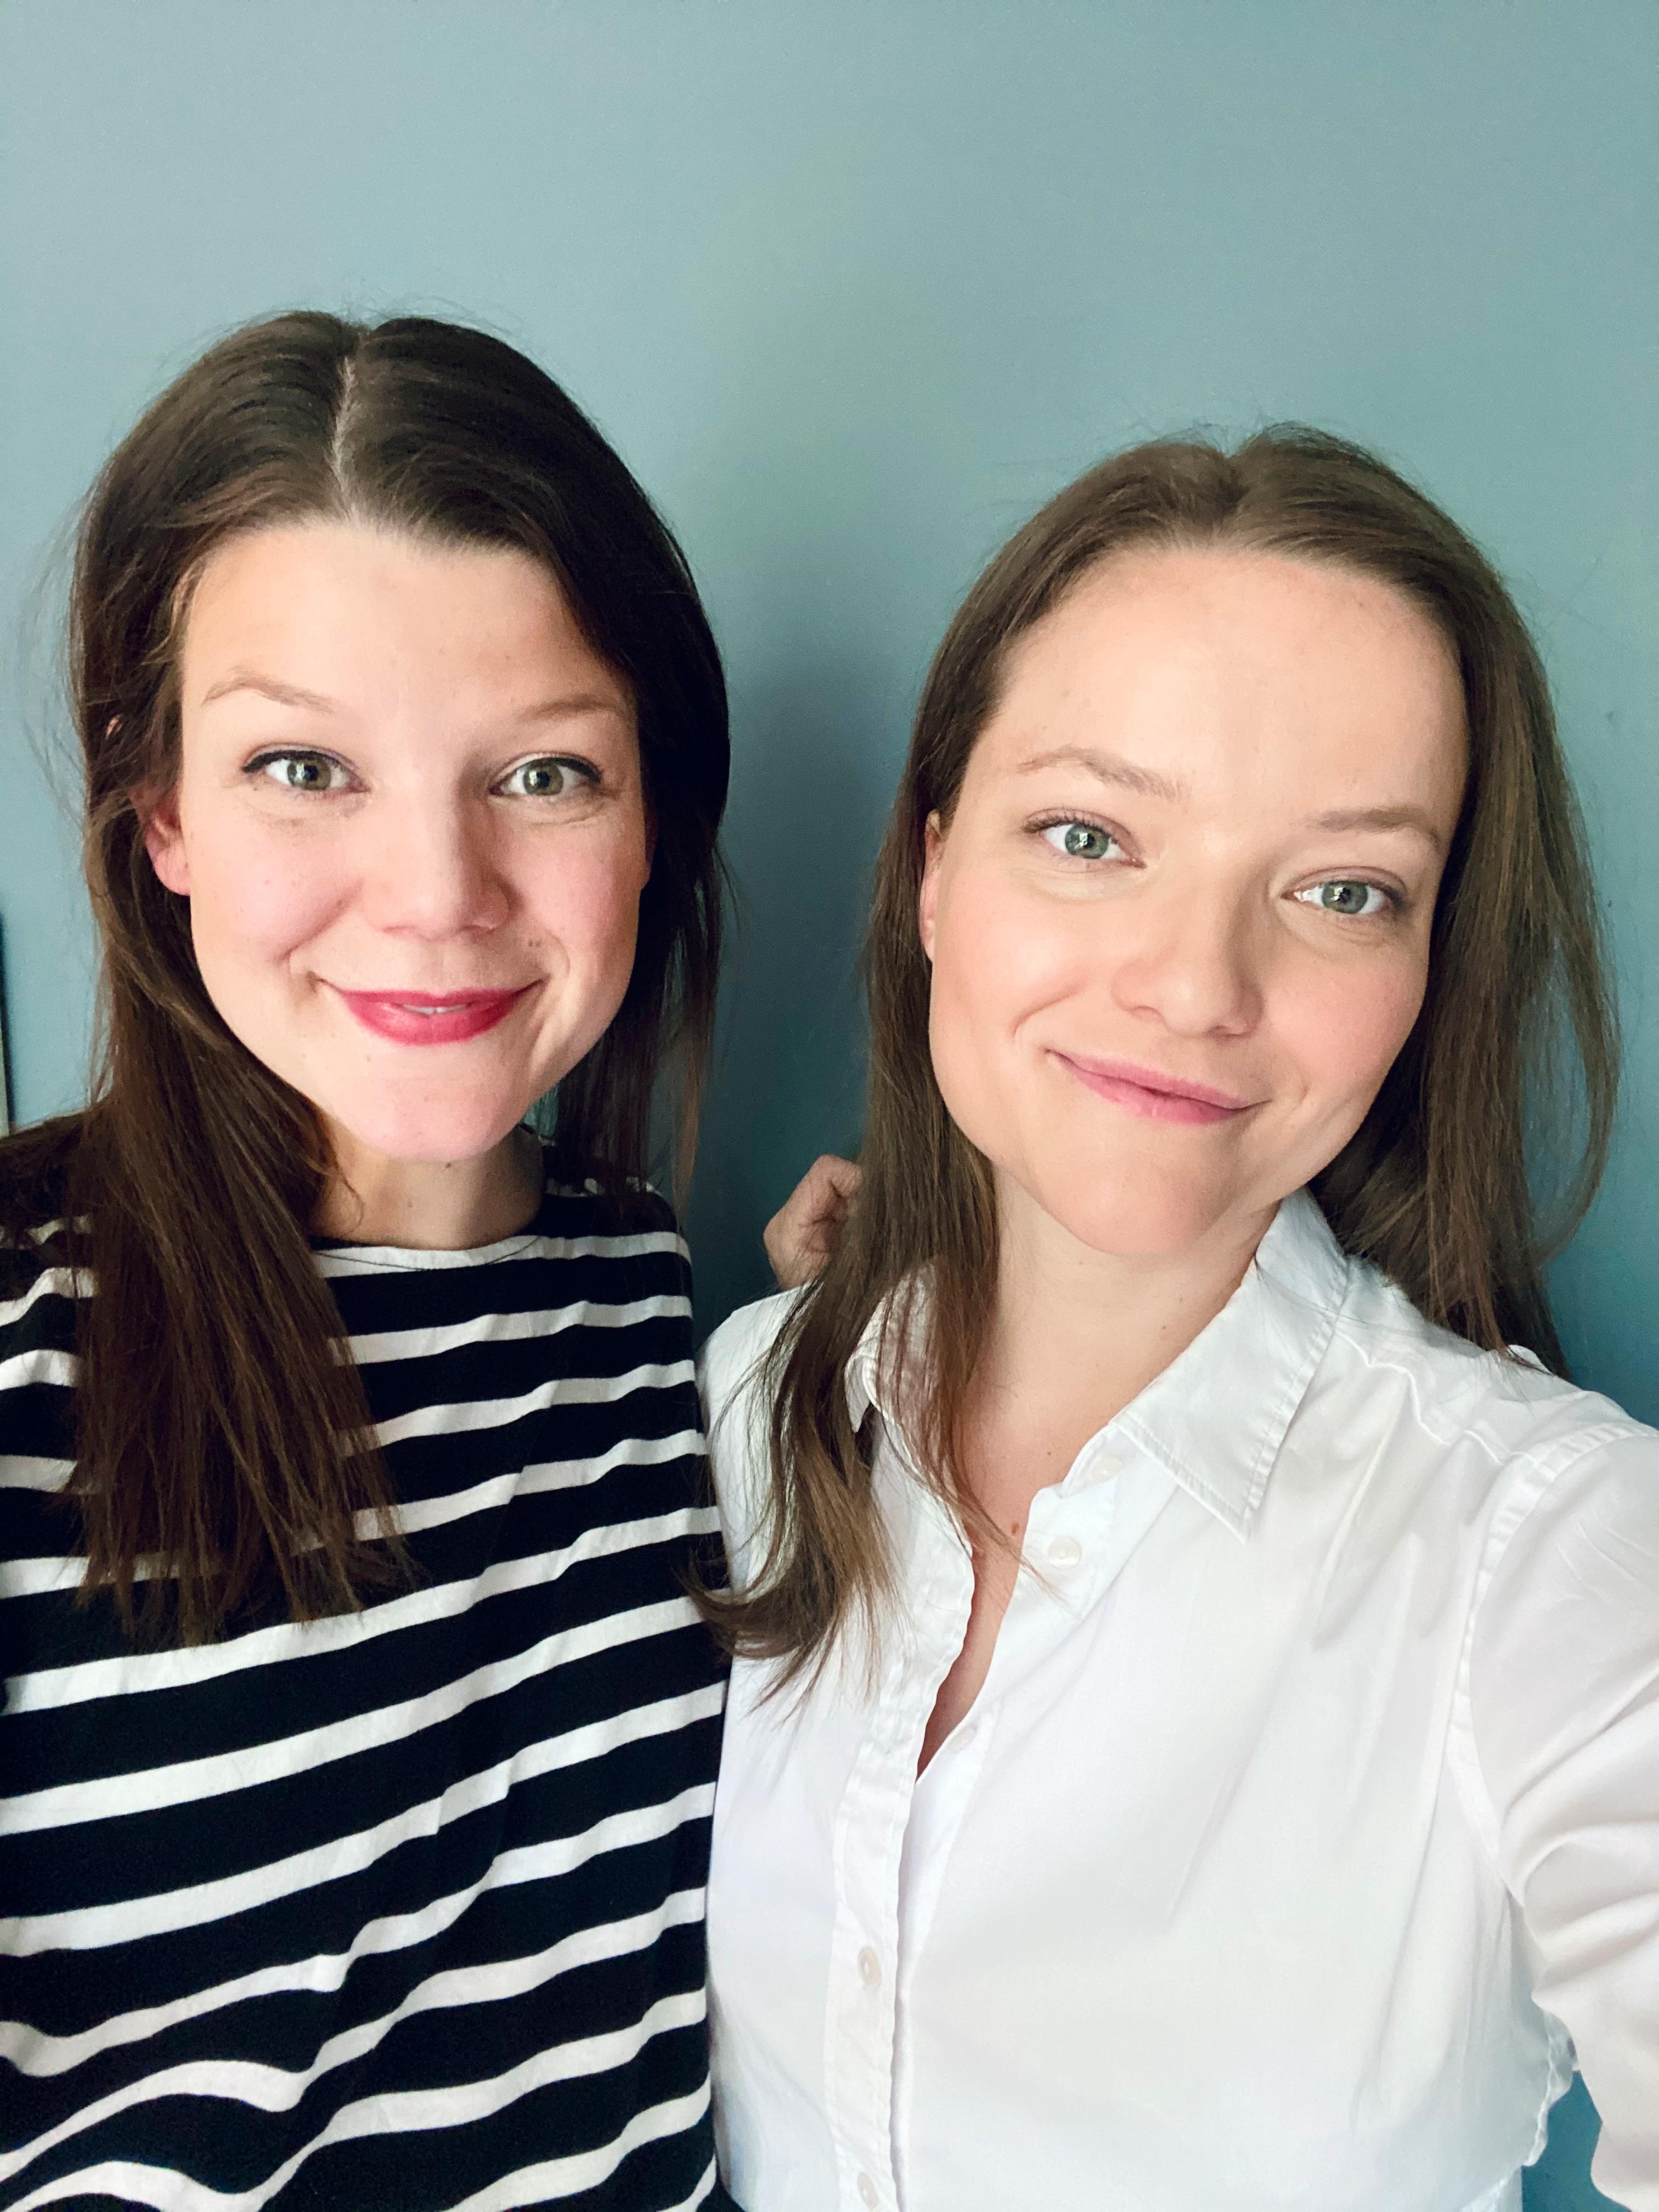 Søstrene Åsta (til venstre) og Solveig Tufto driver konditoriet Tufto, og lager både kaker og konfekt.